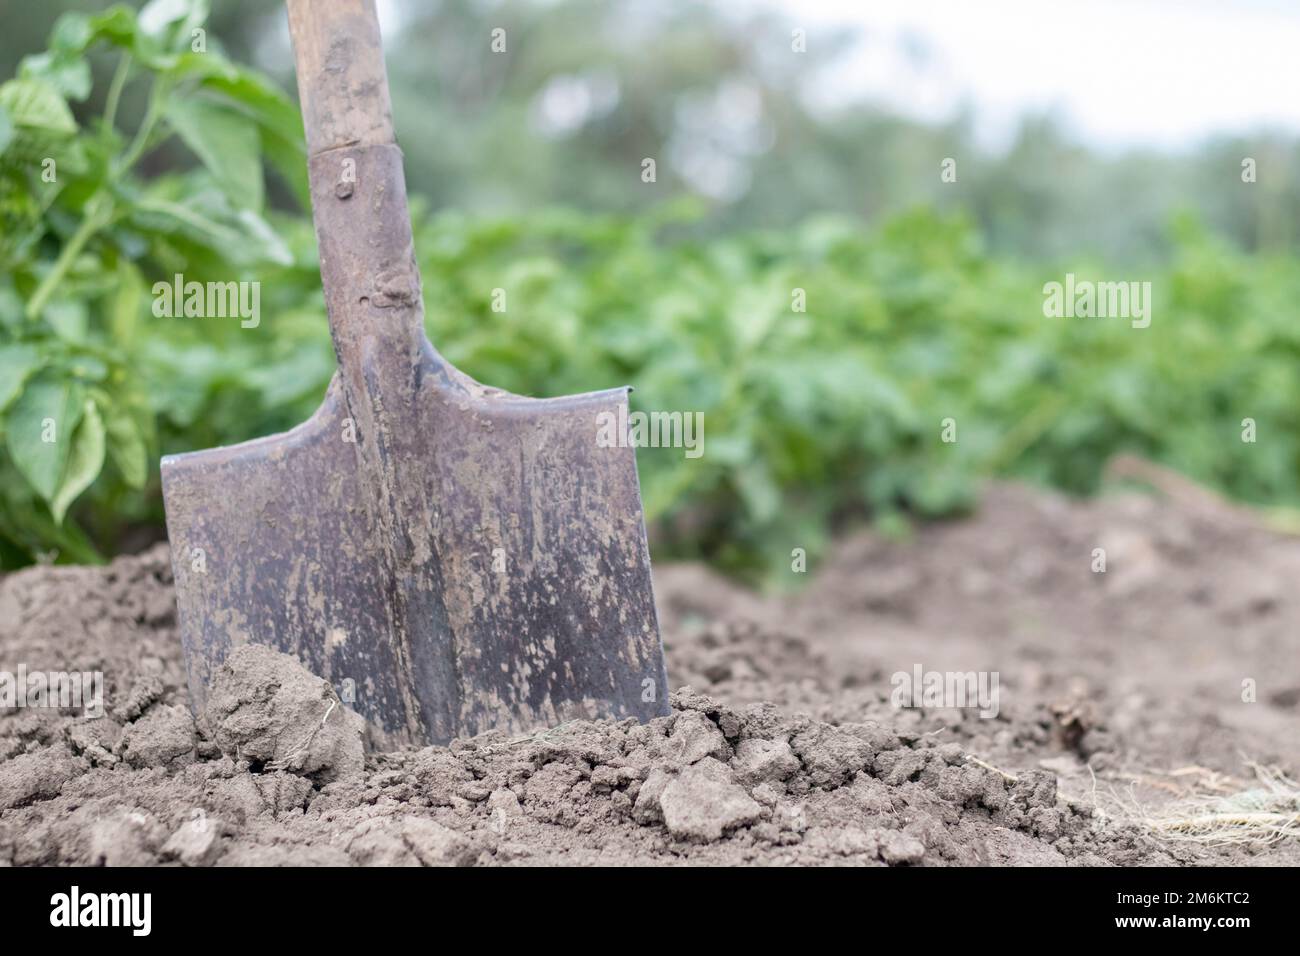 Schaufel auf dem Hintergrund von Kartoffelsträuchern. Ernte. Landwirtschaft. Eine junge Kartoffelknolle aus dem Boden zu graben, zu ernten Stockfoto